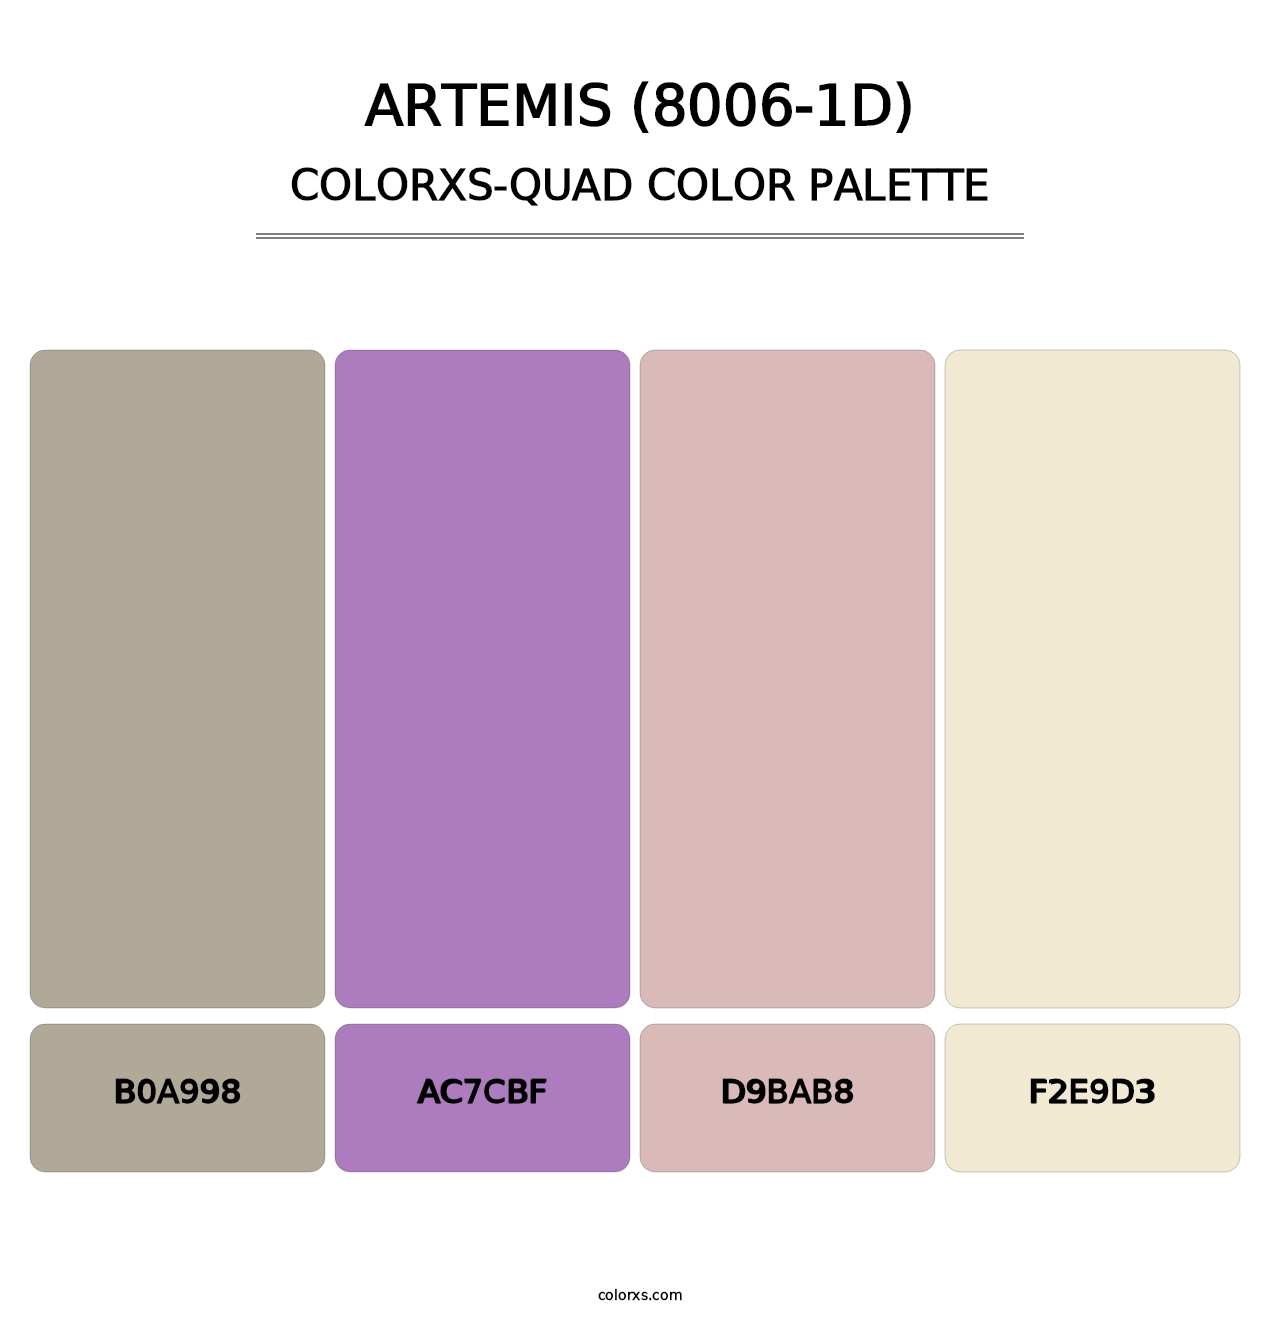 Artemis (8006-1D) - Colorxs Quad Palette